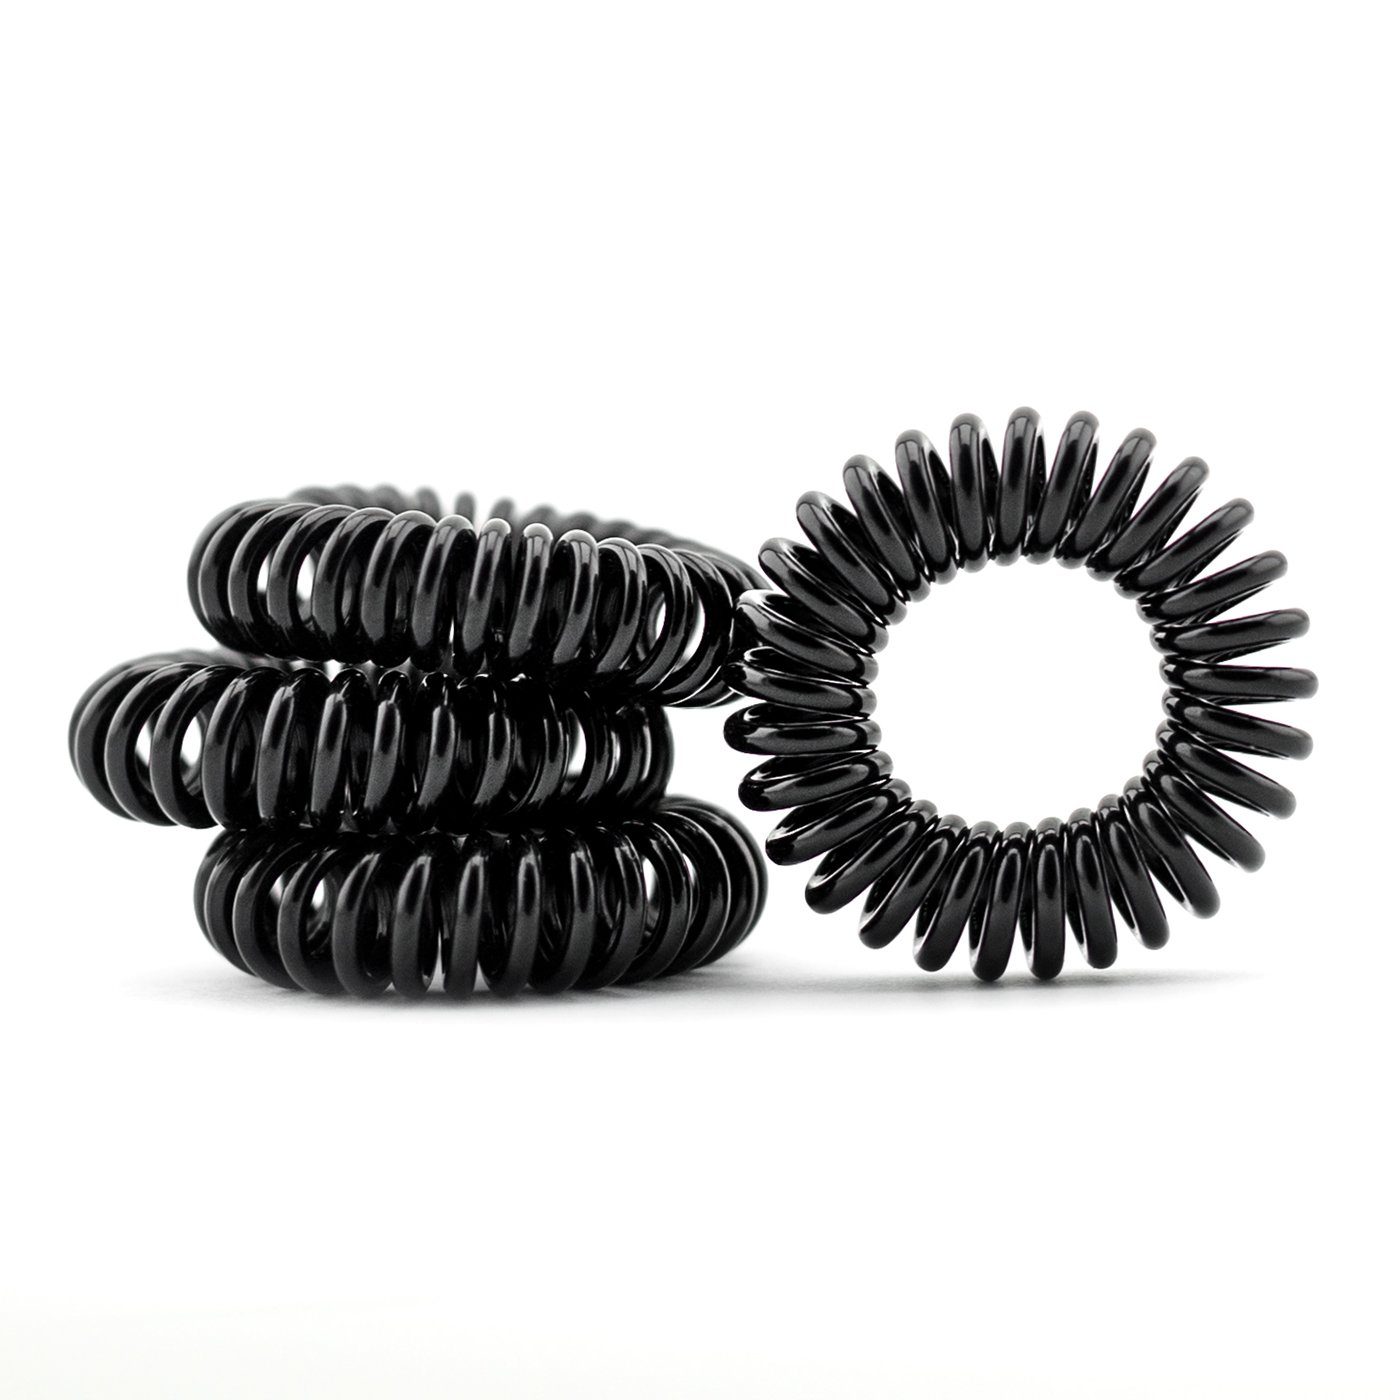 Haargummi Spirale Telefonkabel Haarschmuck Farben und Mustern sortiert 6 Stück 